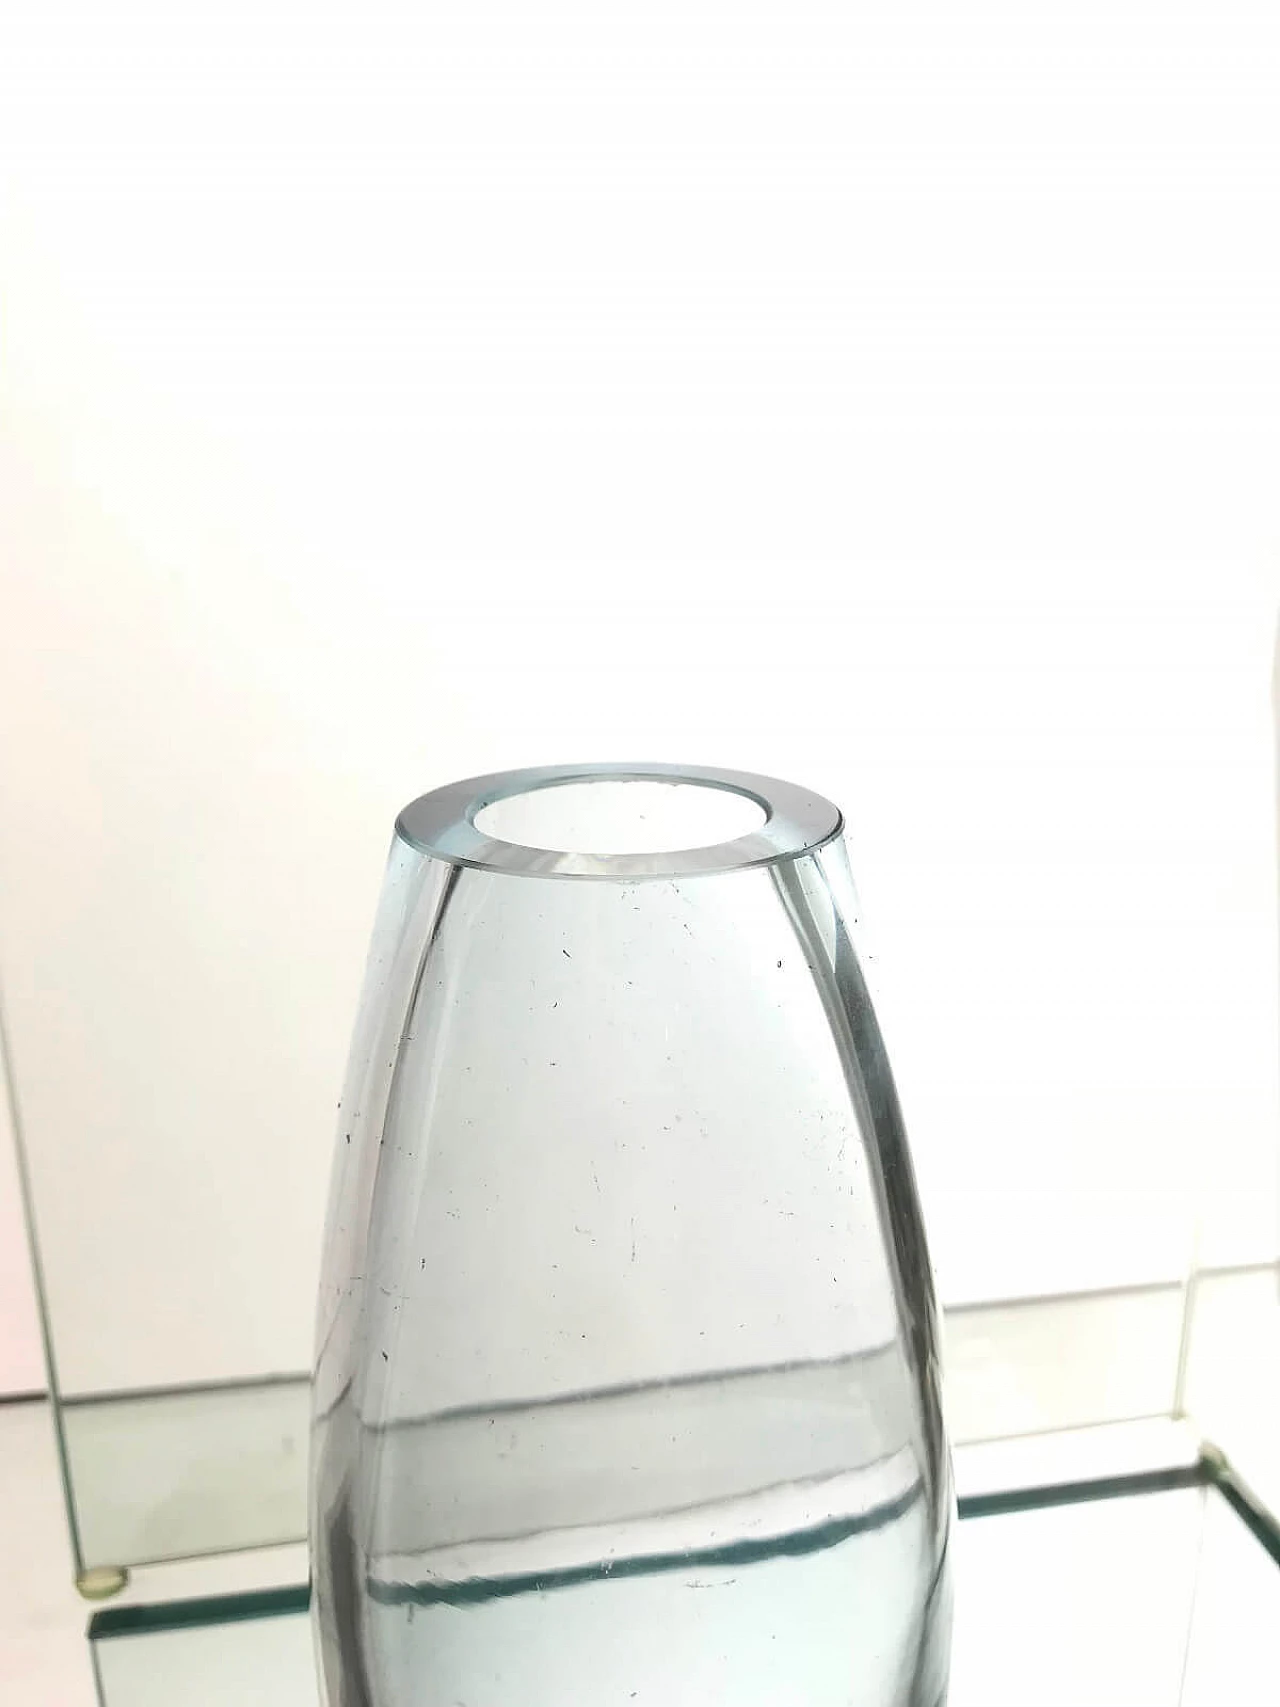 Vase "Torpedovase" by Per Lütken for Holmegaard 3